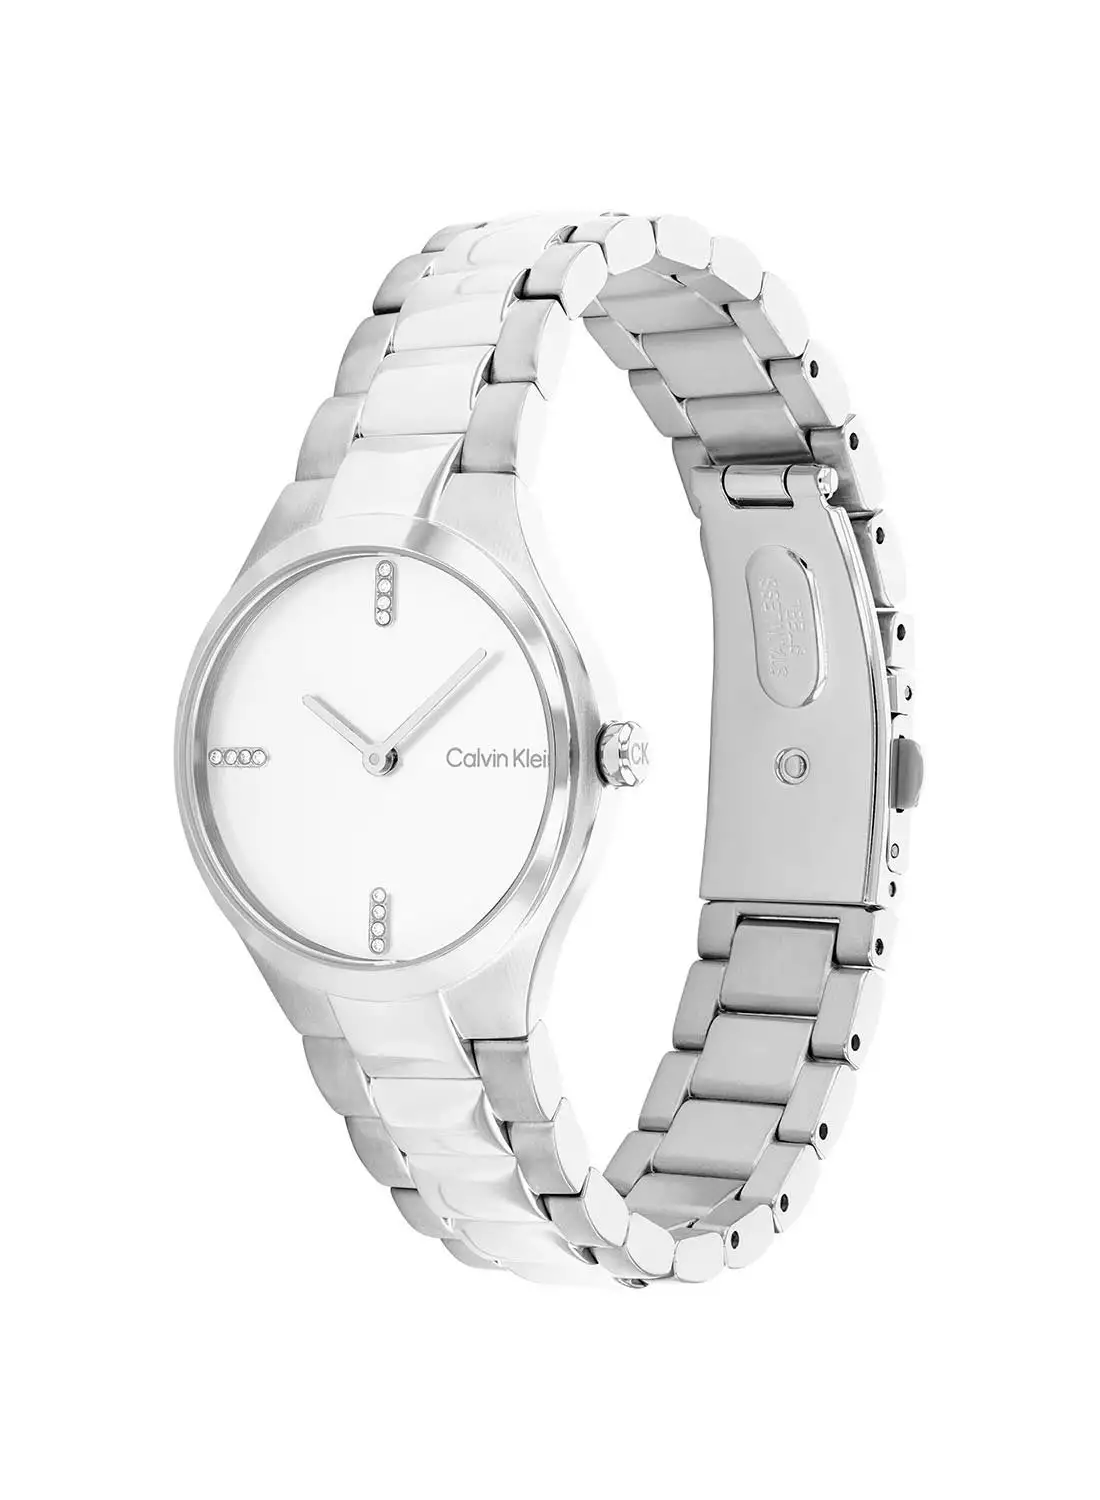 CALVIN KLEIN Women's Analog Round Shape Stainless Steel Wrist Watch 25200332 - 30 Mm